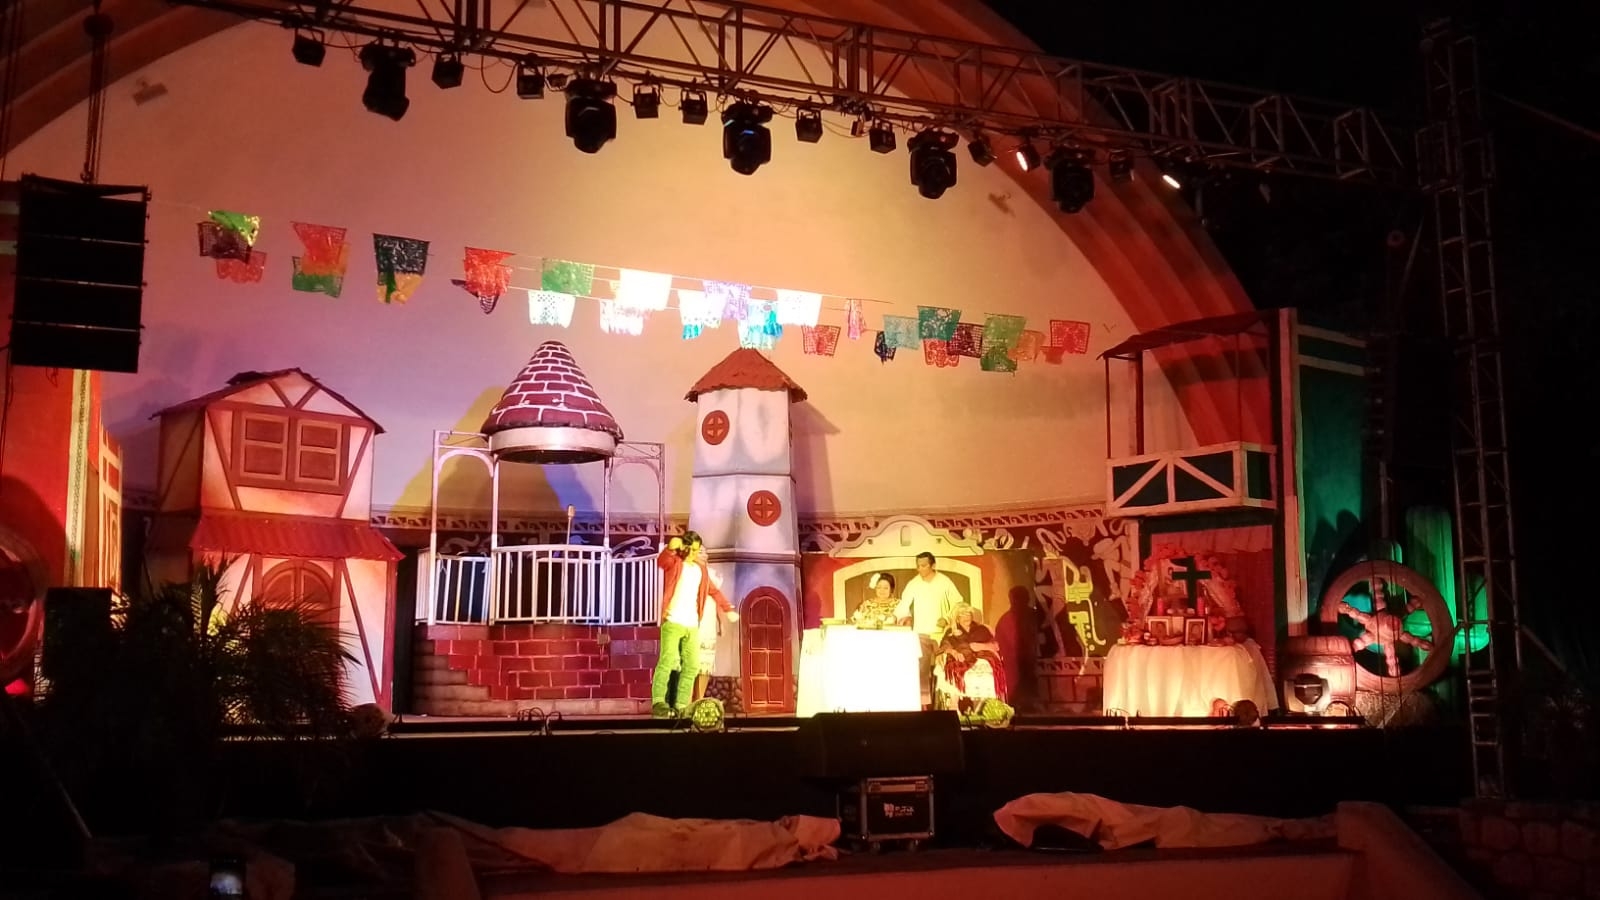 Coco El Musical tuvo como escenario la Concha Acústica